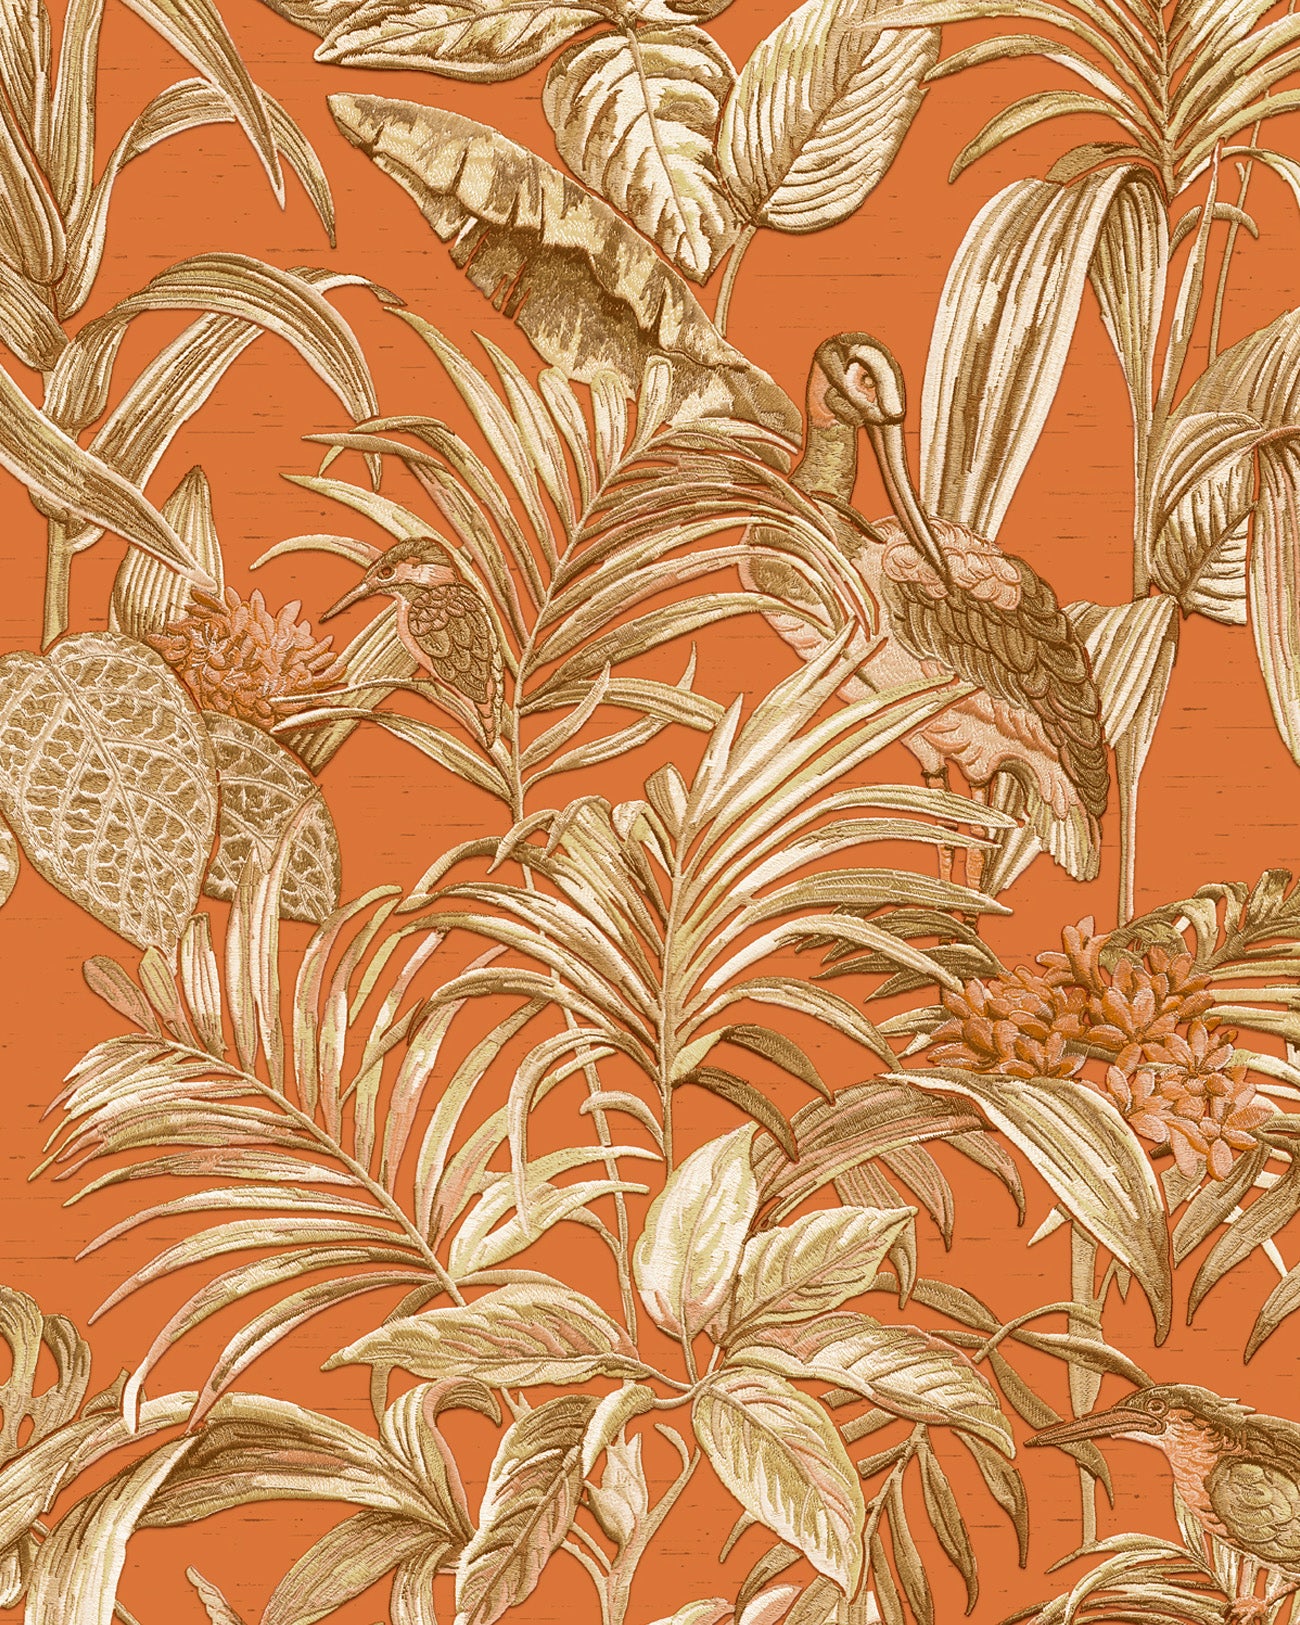 Papier peint moitf d'oiseaux Profhome DE120019-DI papier peint intissé gaufré à chaud gaufré avec un dessin exotique brillant orange cuivré or blanc crème 5,33 m2